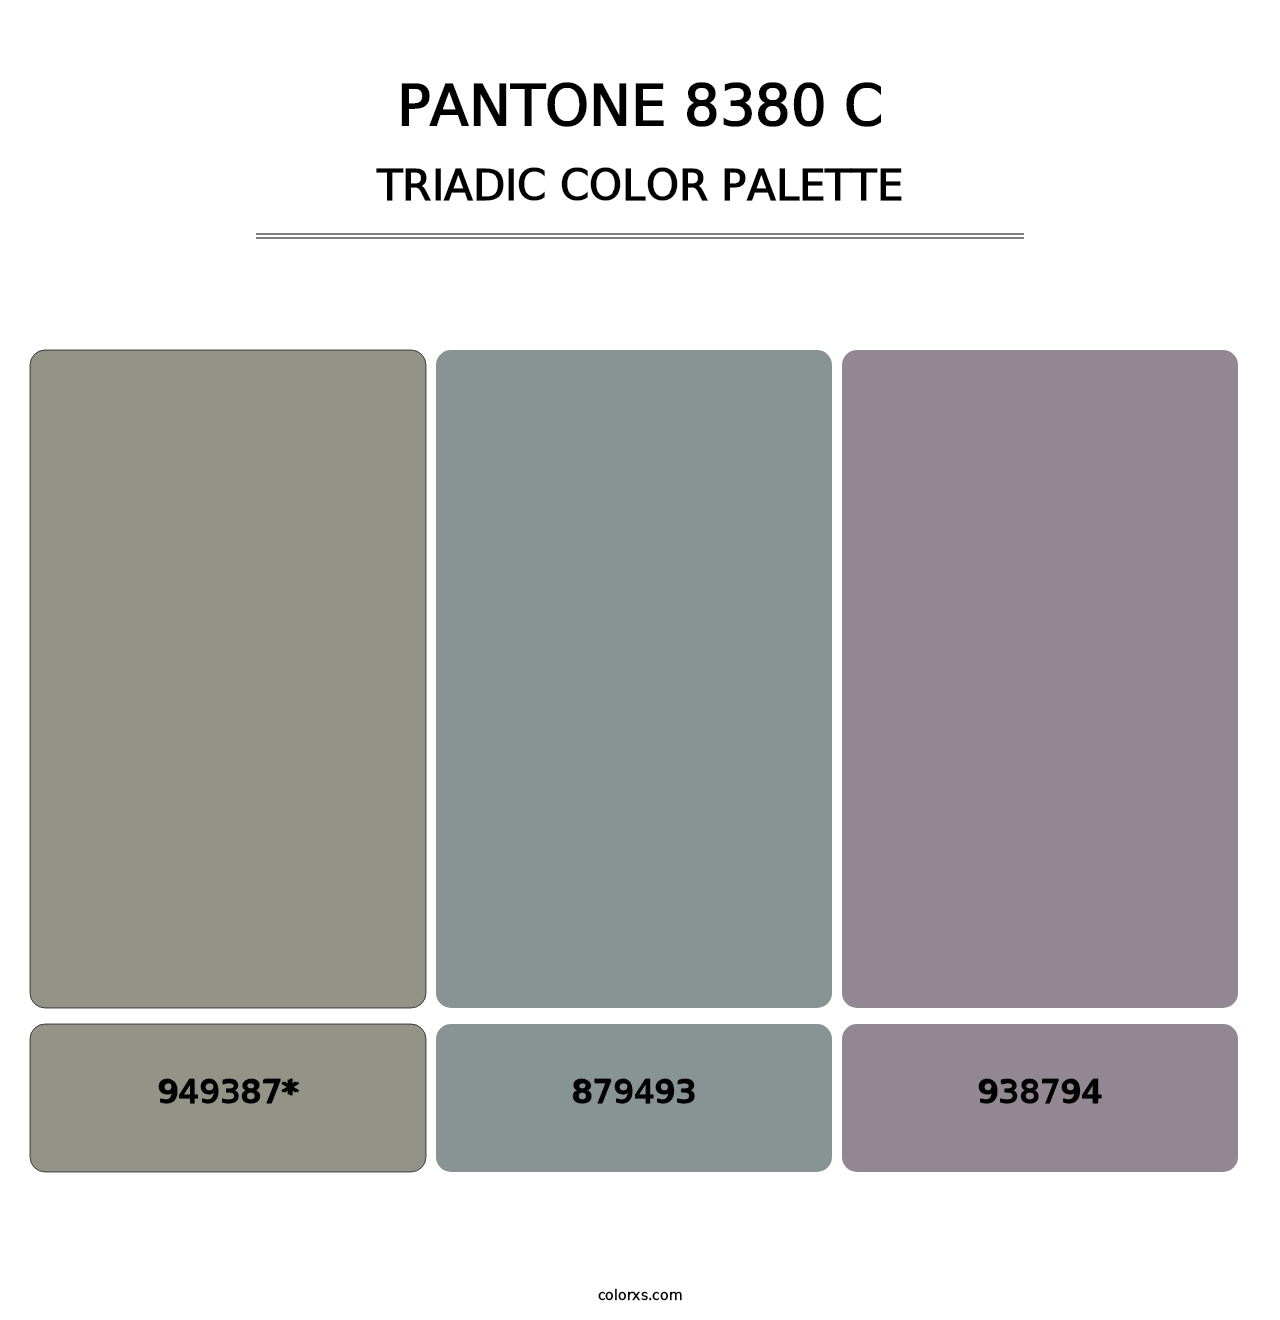 PANTONE 8380 C - Triadic Color Palette